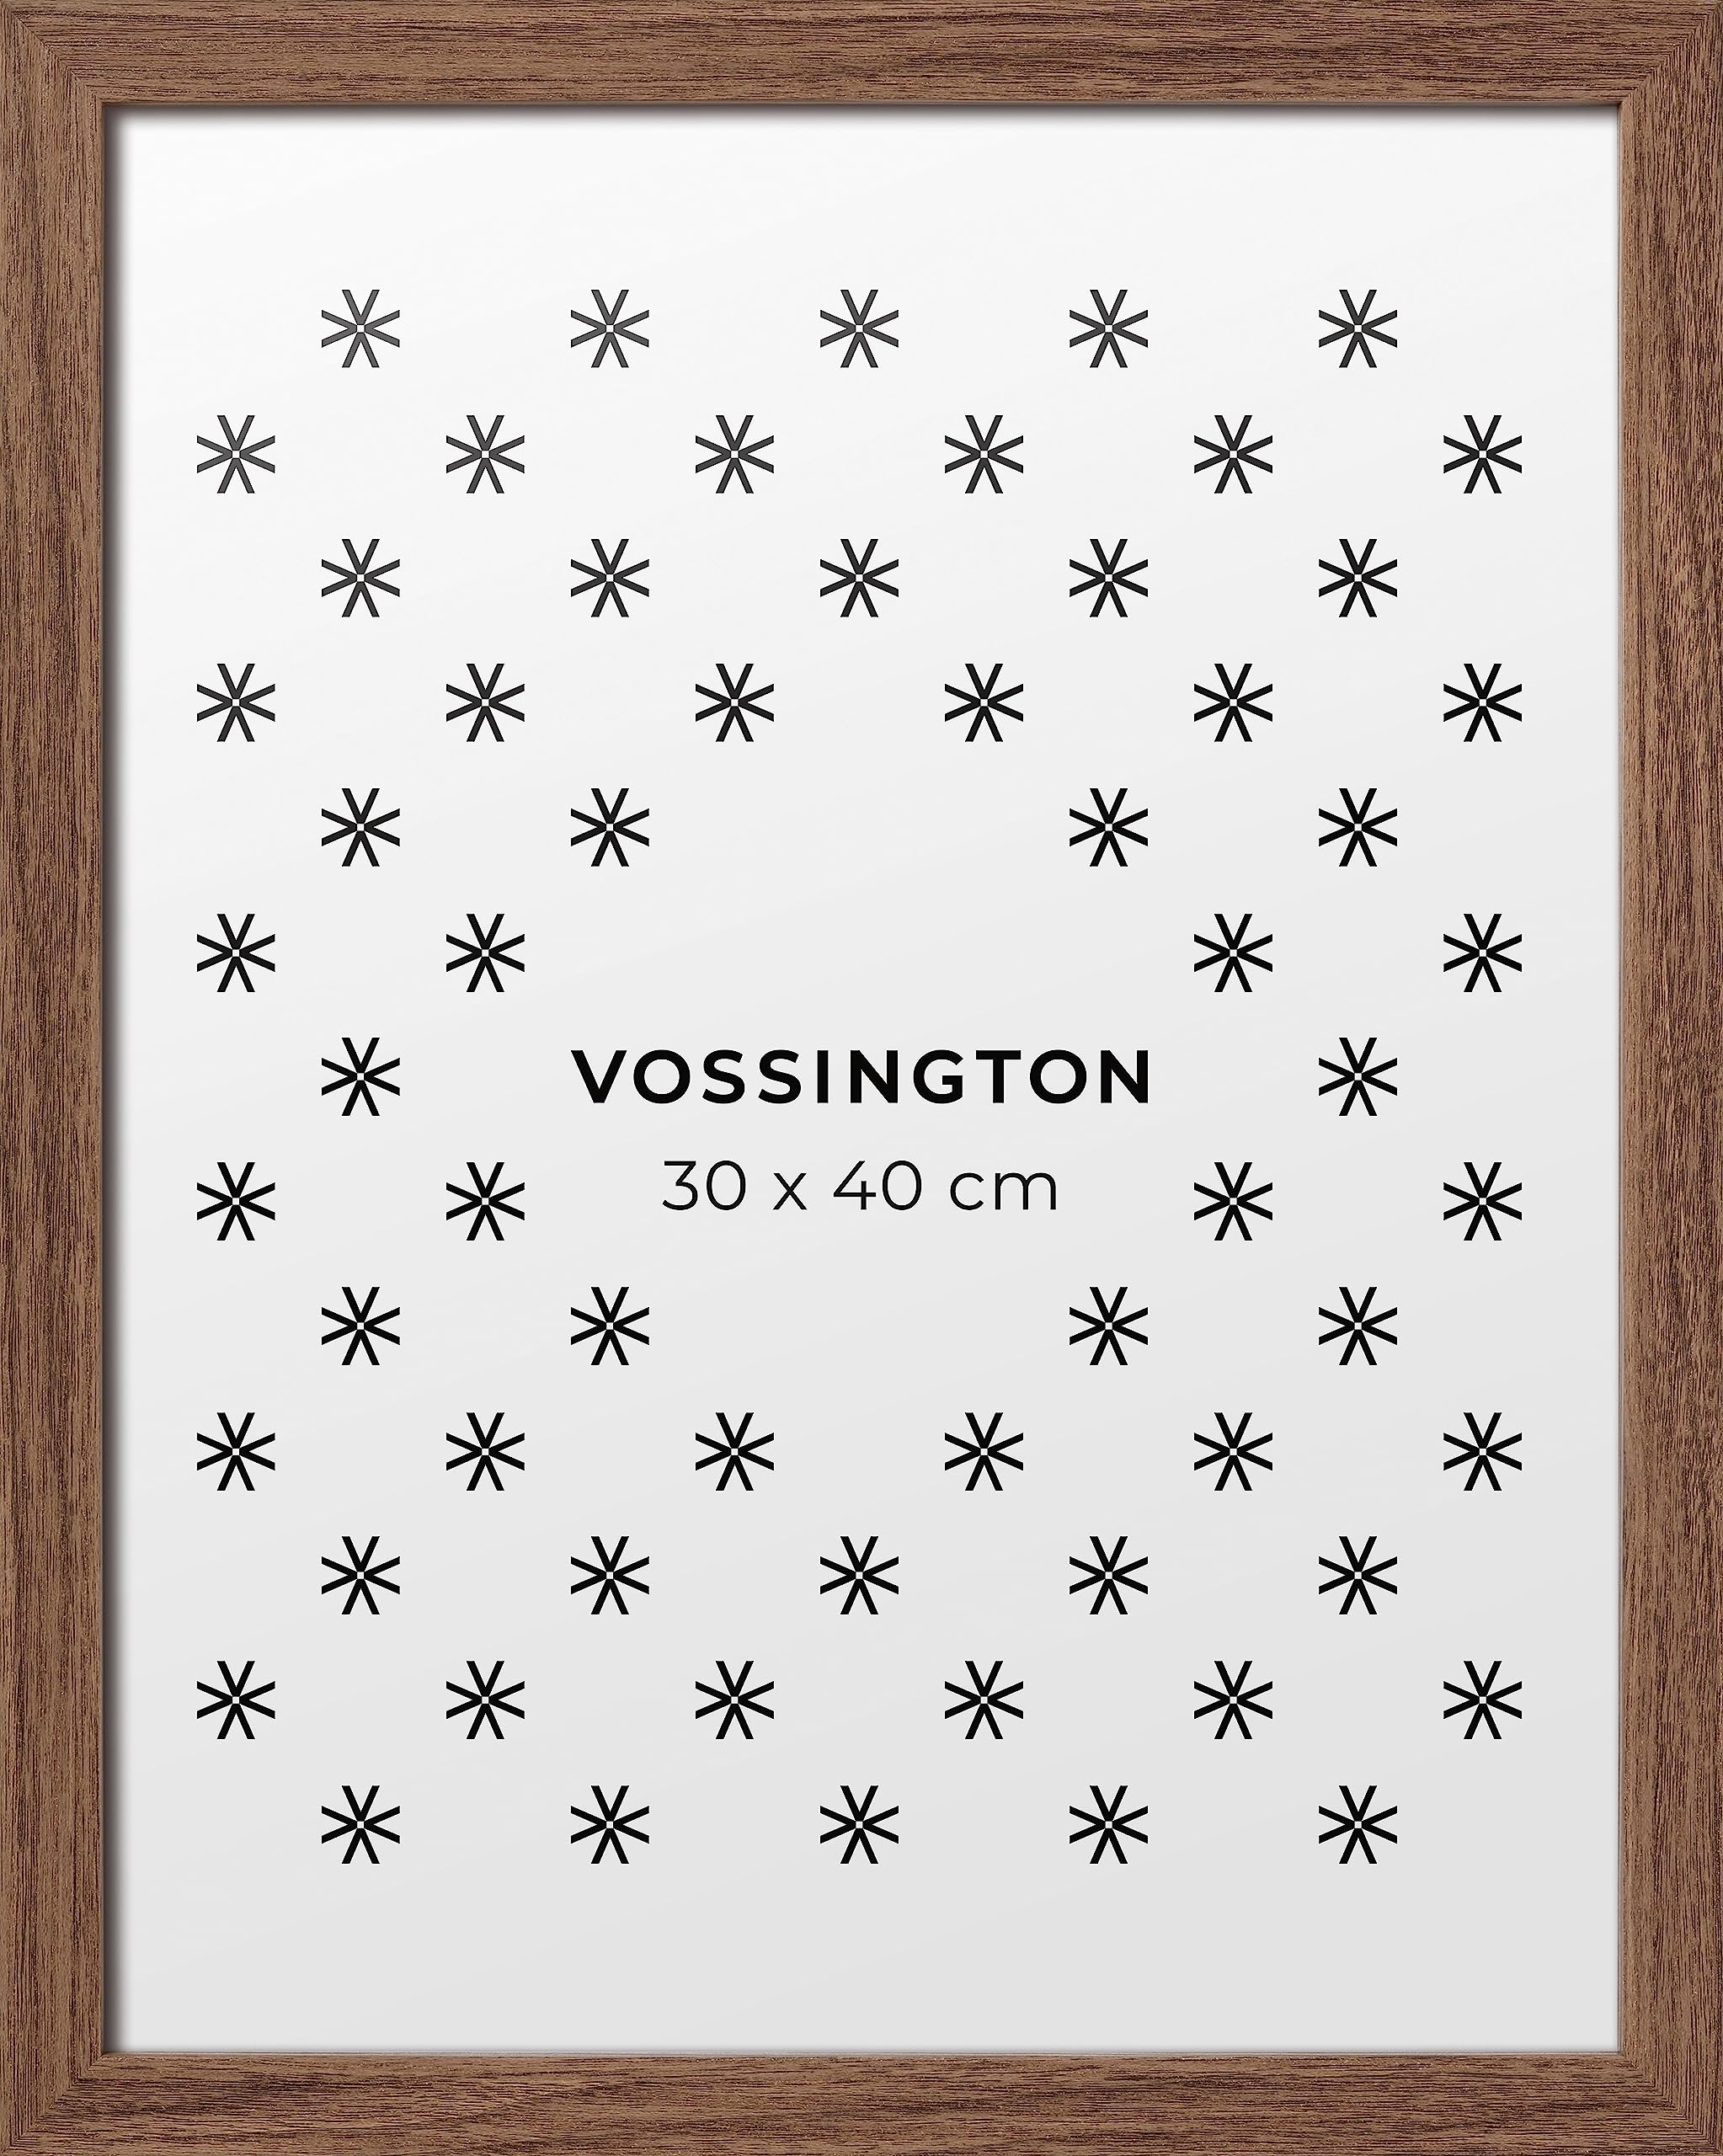 Vossington Bilderrahmen 30x40 Walnuss - Holz (künstliche Holzmaserung) - Modernes, klassisches Design - Rahmen für 1 Bild, Foto, Poster oder Puzzle im Format 30 x 40 cm (40x30 cm)